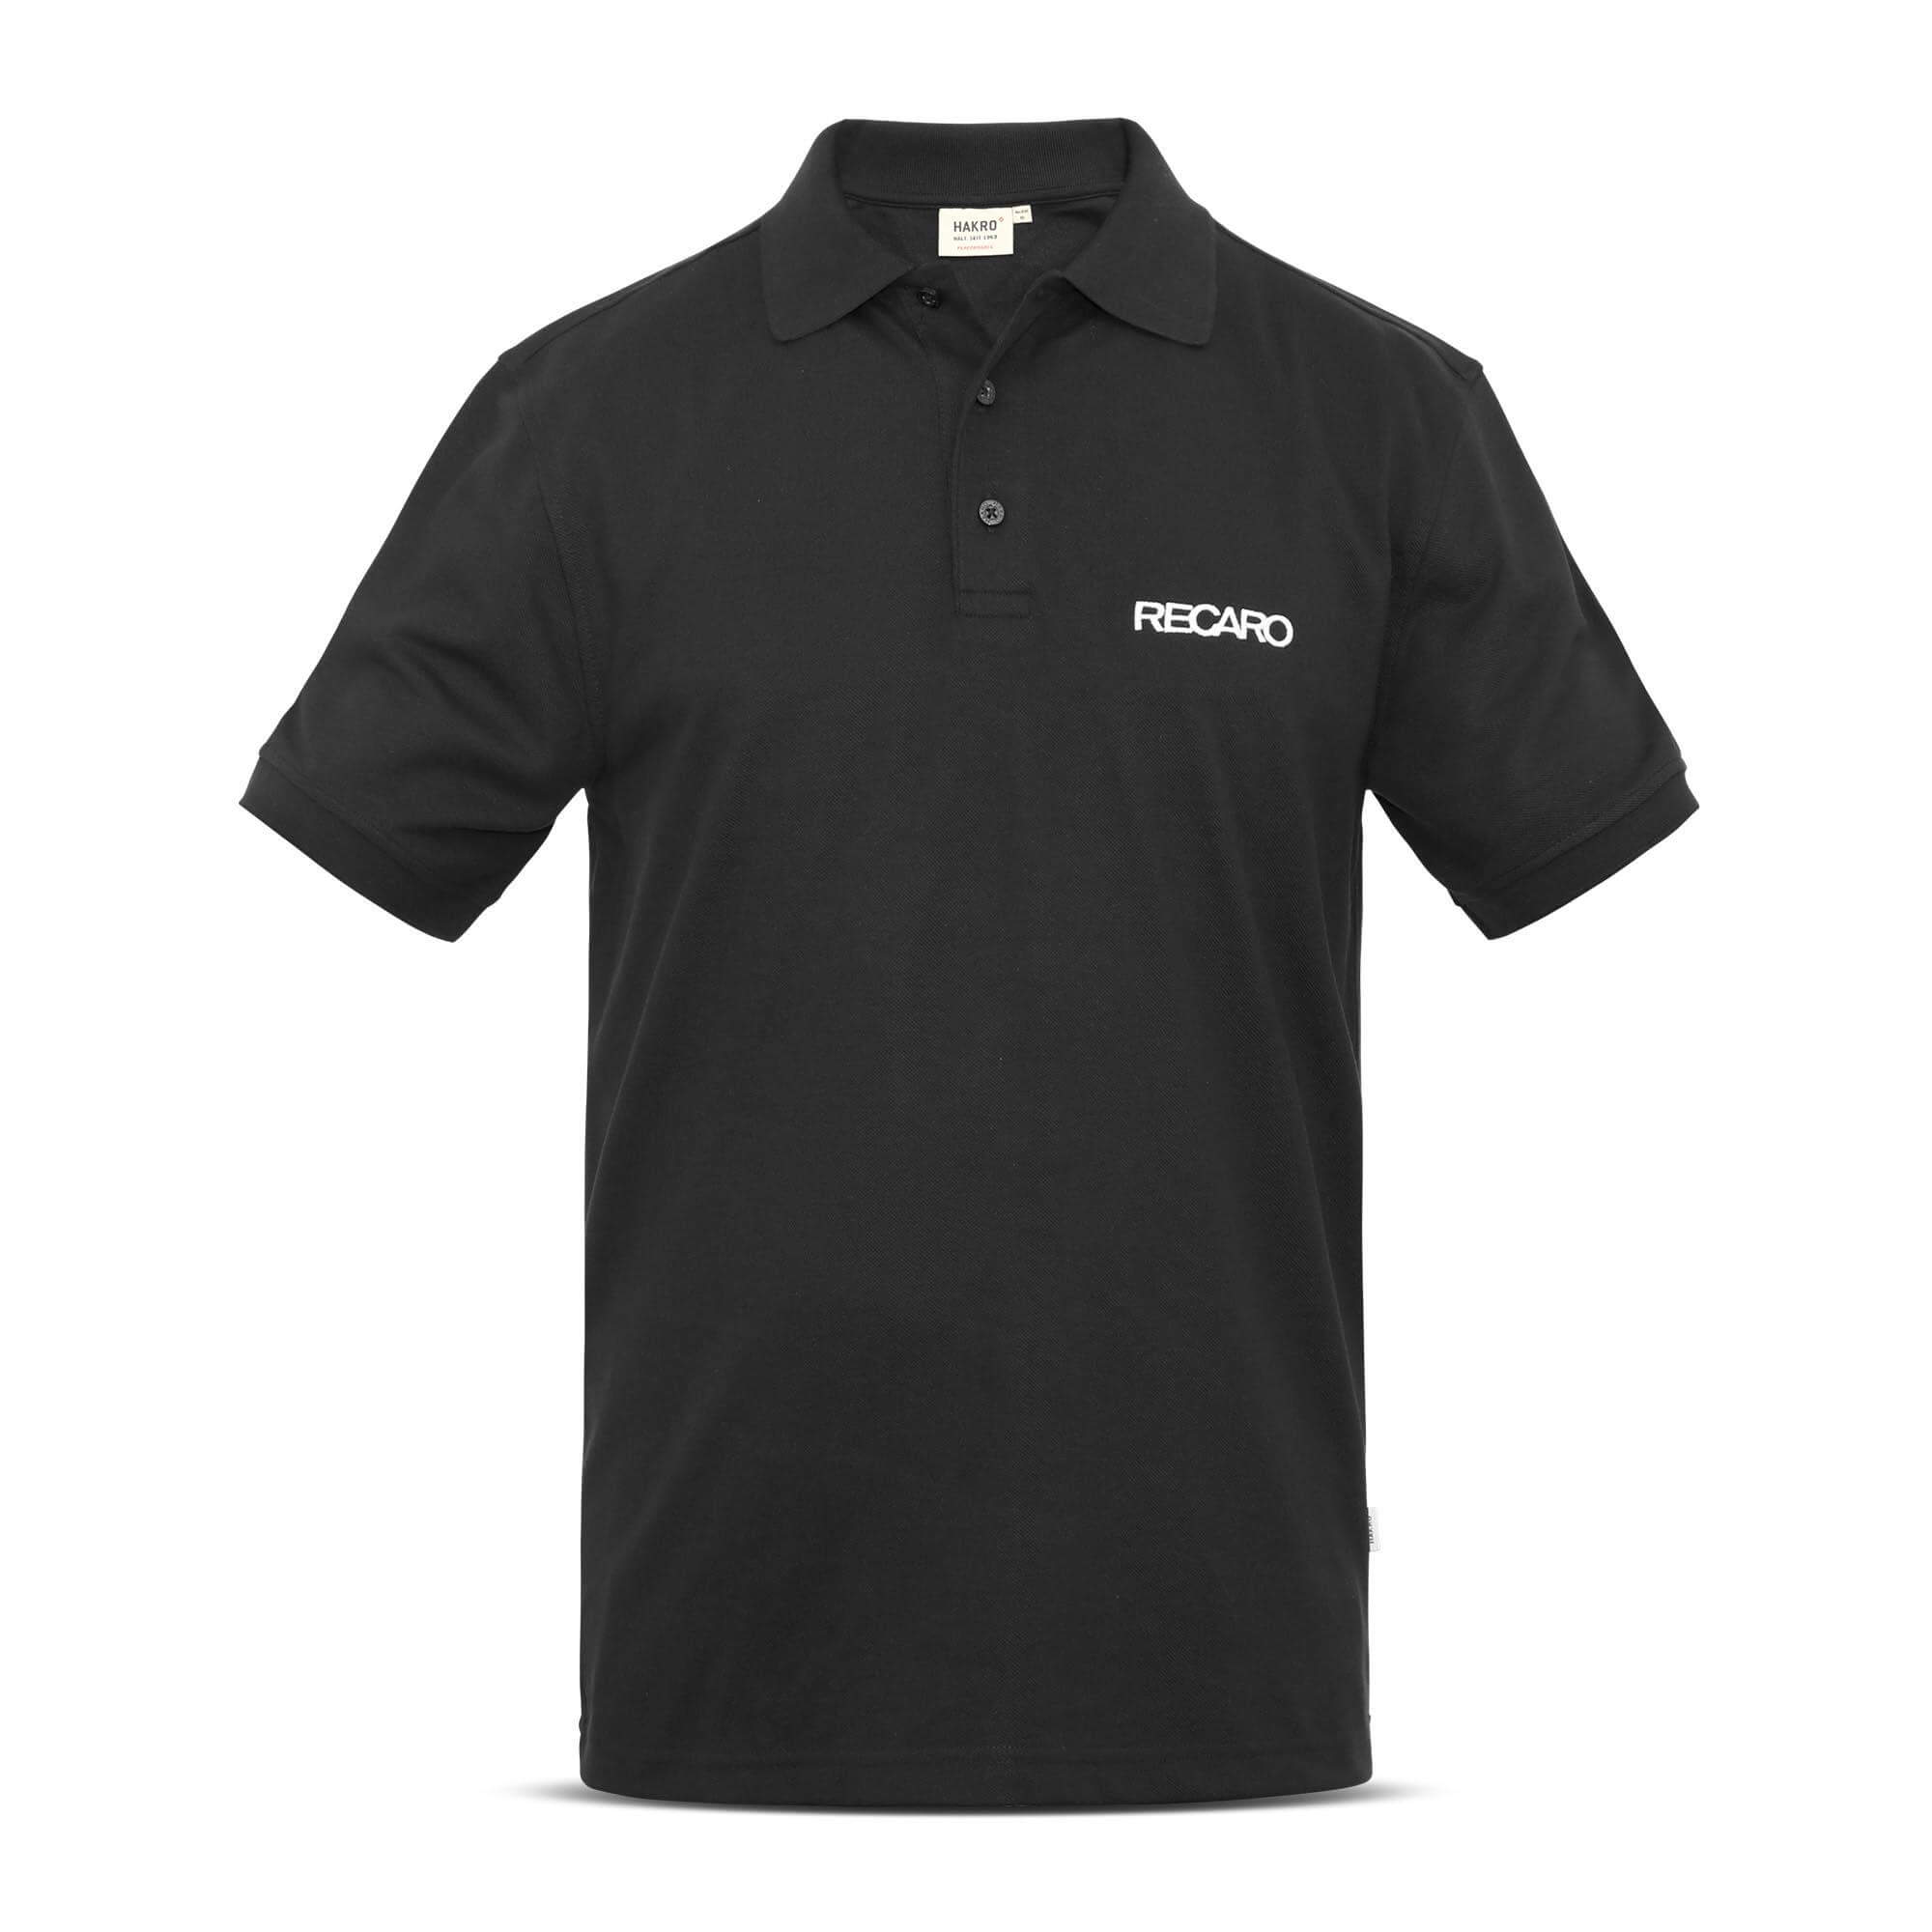 RECARO 21000374 Polo shirt men, size XXL Photo-0 